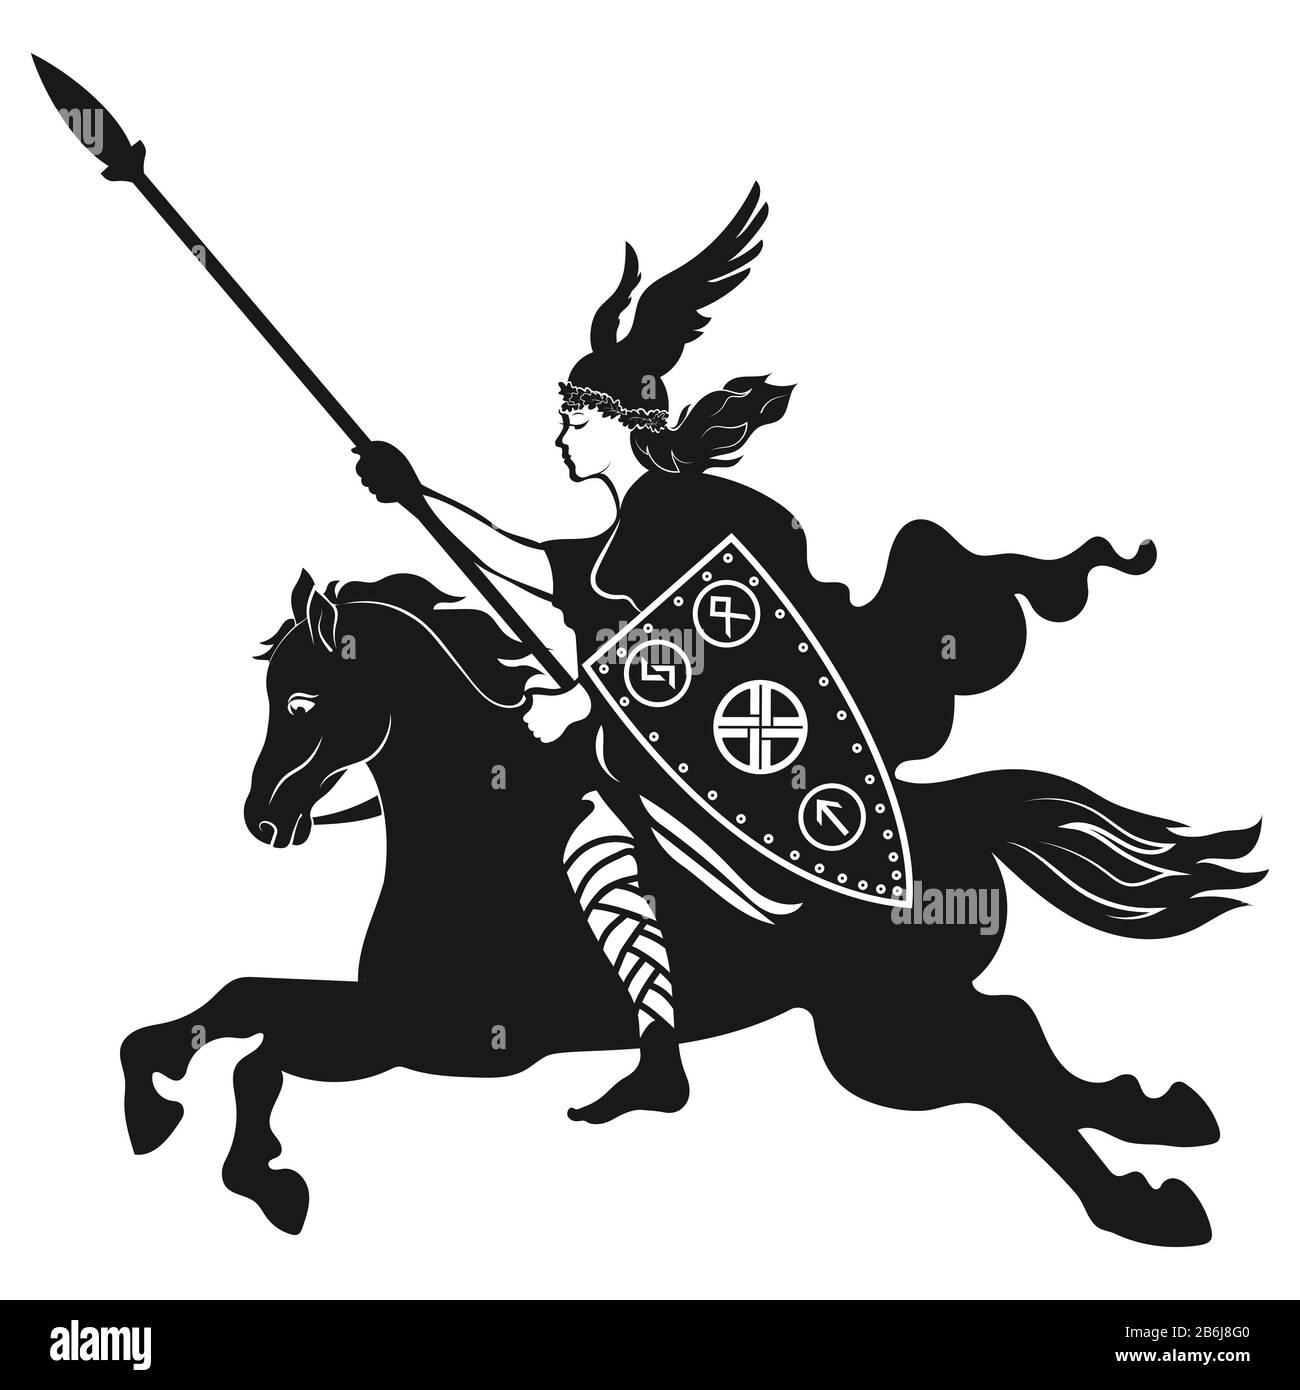 Design Viking. Valkyrie sur un cheval de guerre, illustration de la mythologie scandinave, dessiné dans le style Art nouveau Illustration de Vecteur